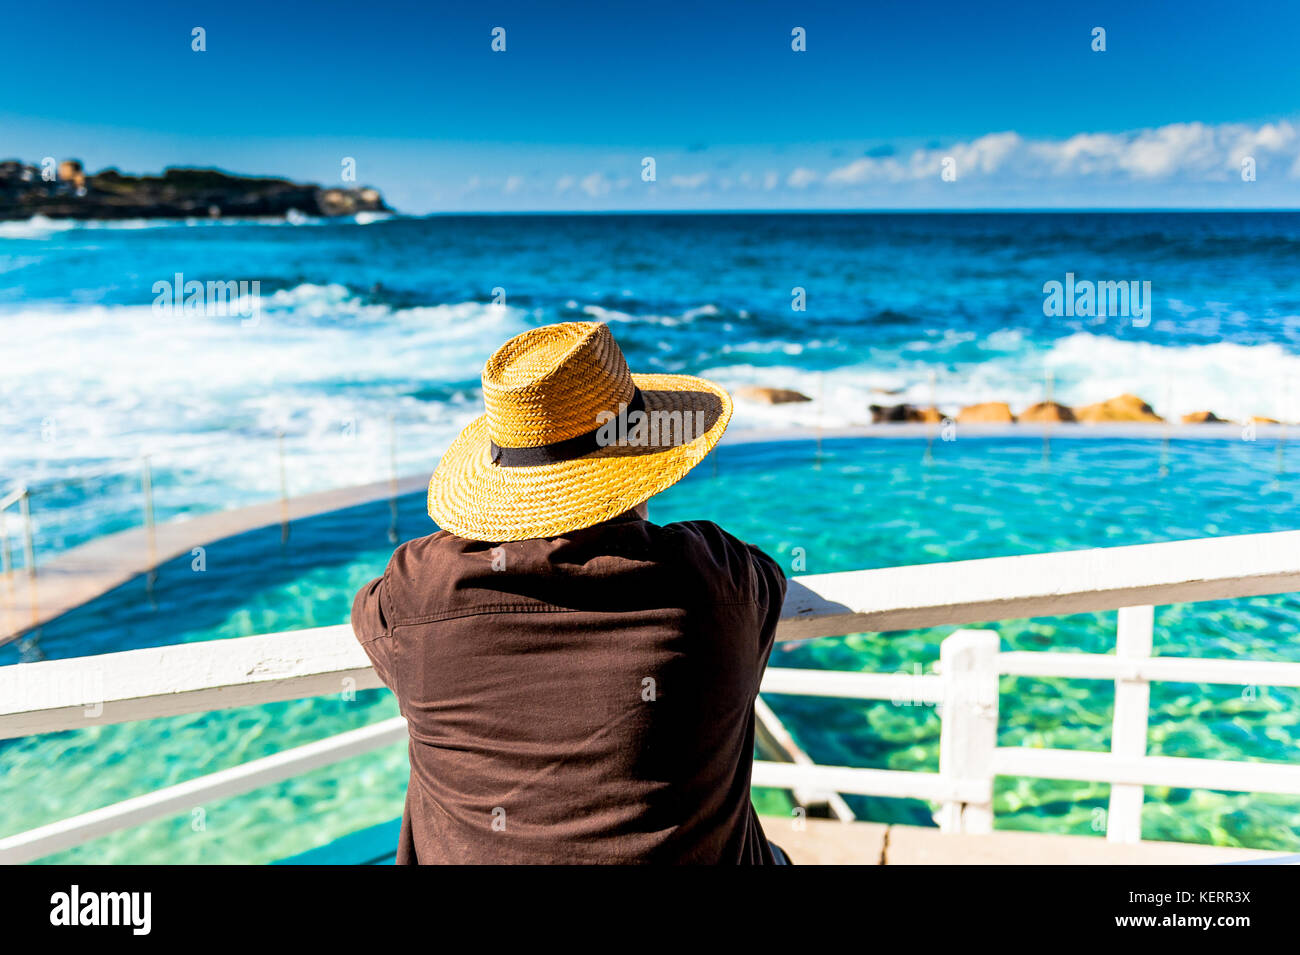 Un turista observa la impresionante costa, la piscina al aire libre y las vistas al mar a lo largo de la ruta costera entre Bondi Beach y Coogee Sydney Australia New South Wale Foto de stock